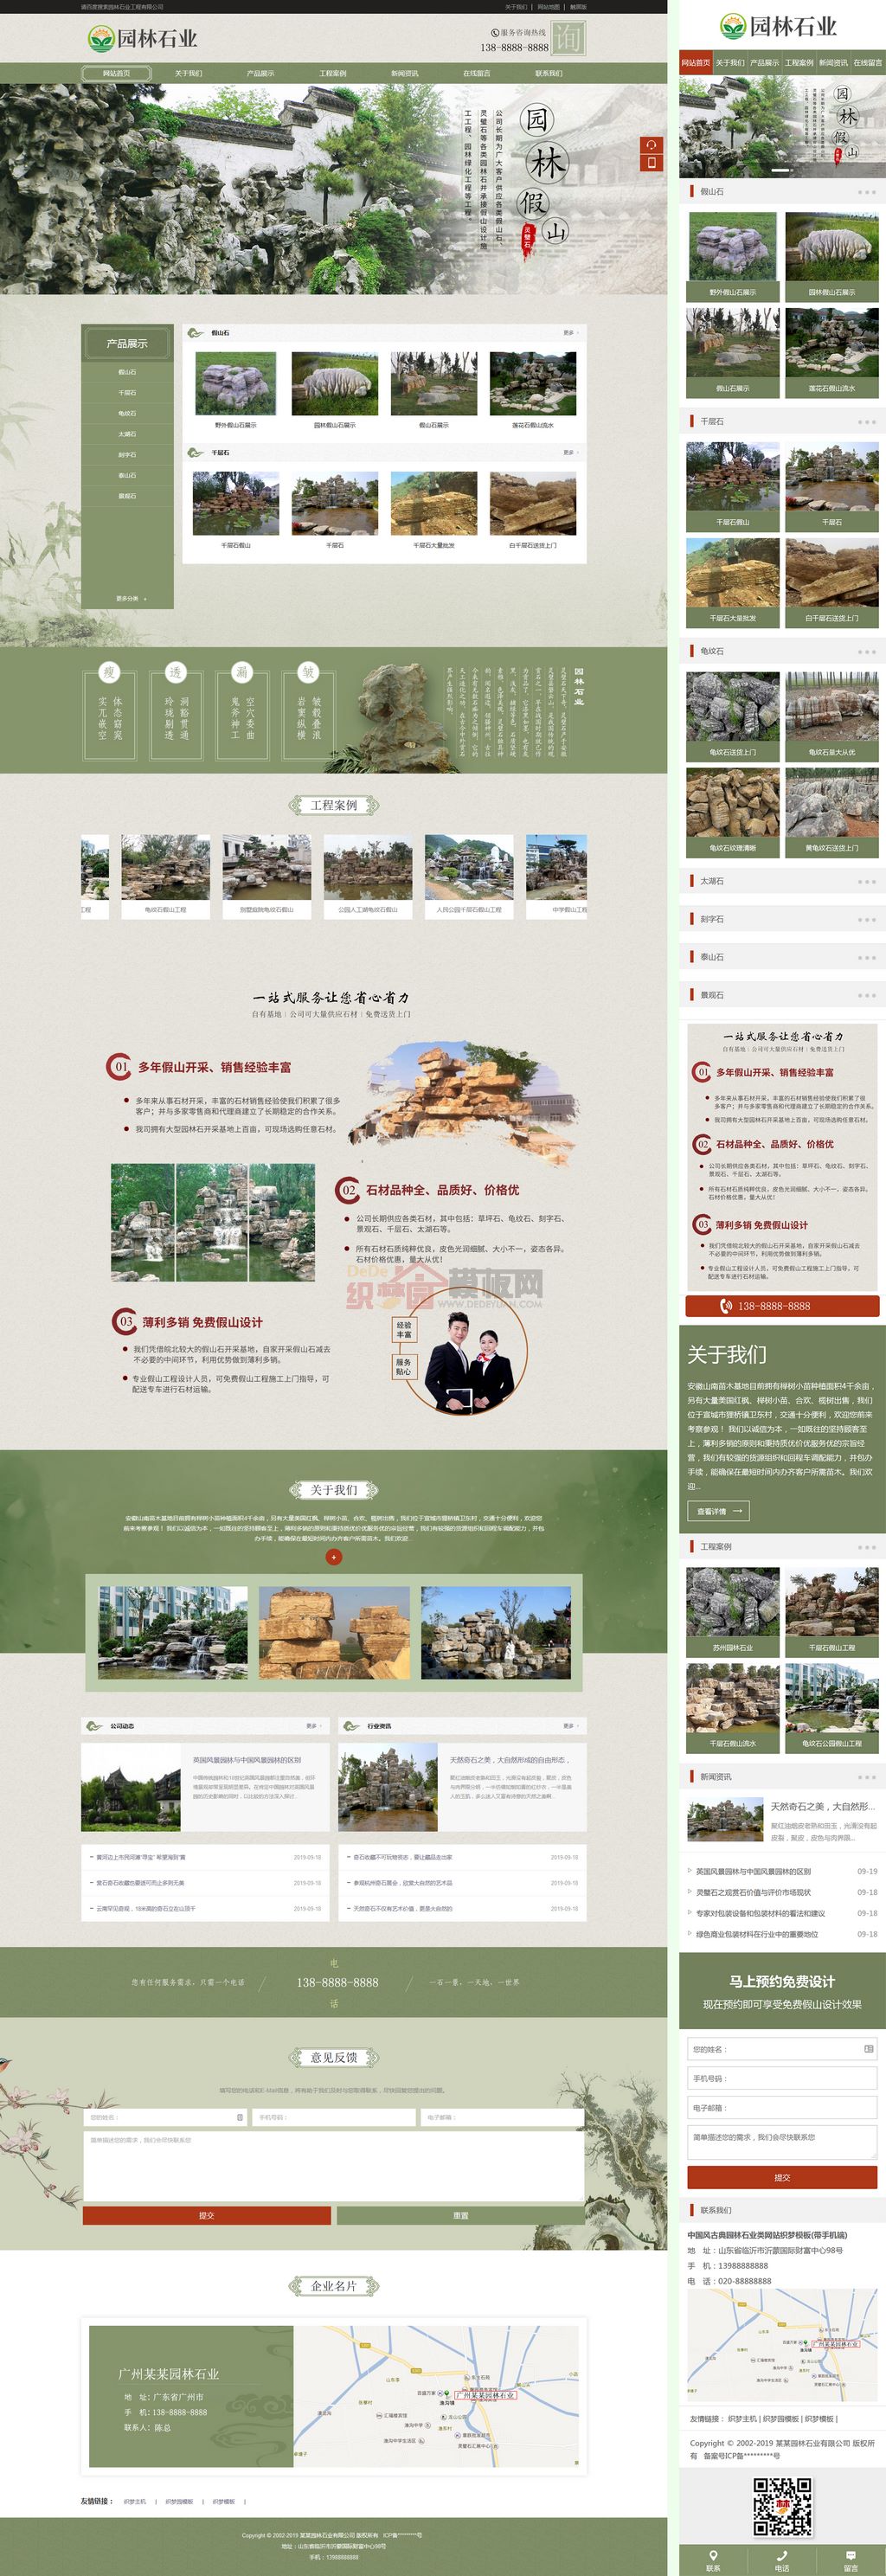 中国风古典园林石业网站Wordpress模板(带手机端)截图